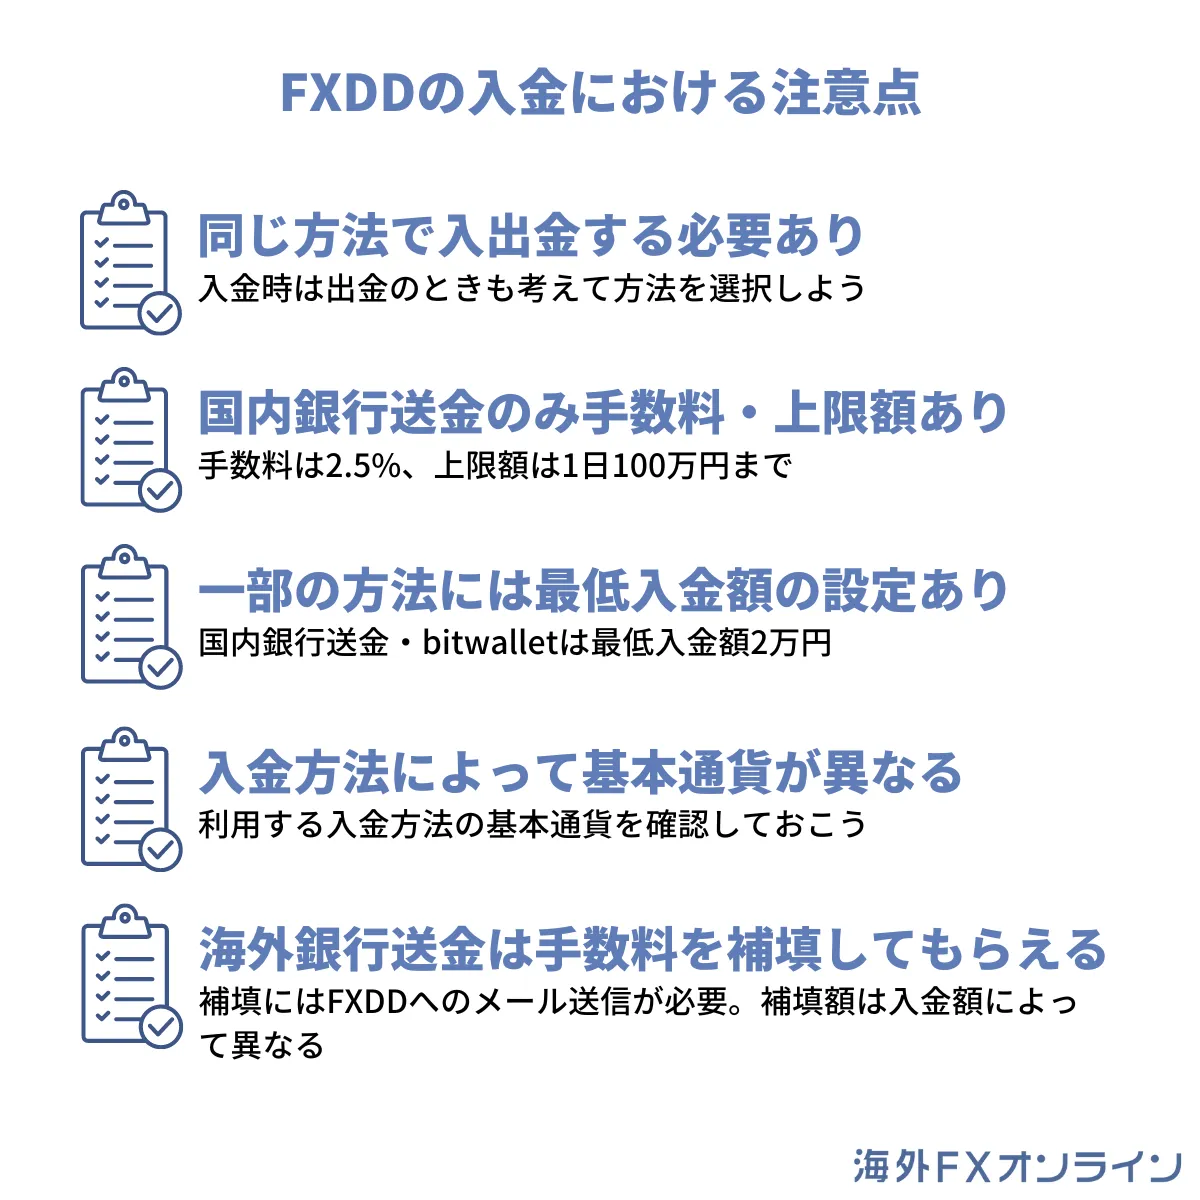 FXDDの入金における注意点